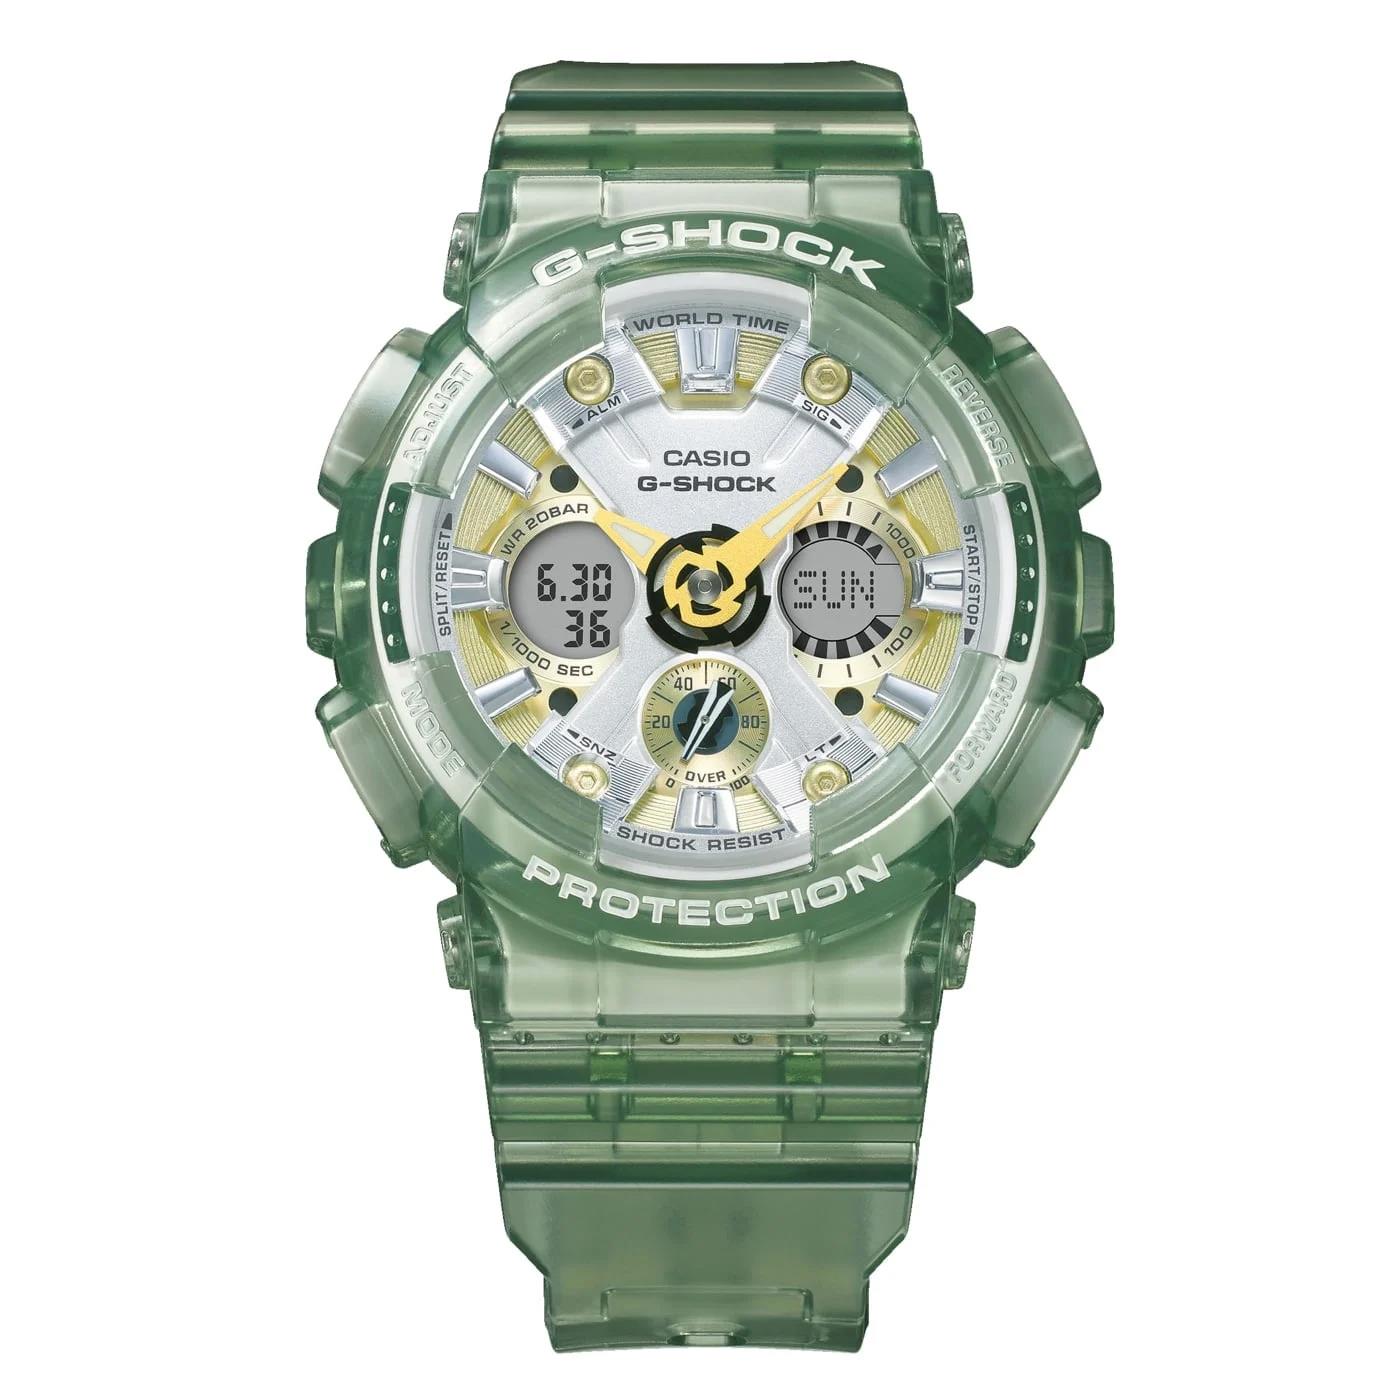 46mm case watch - CASIO